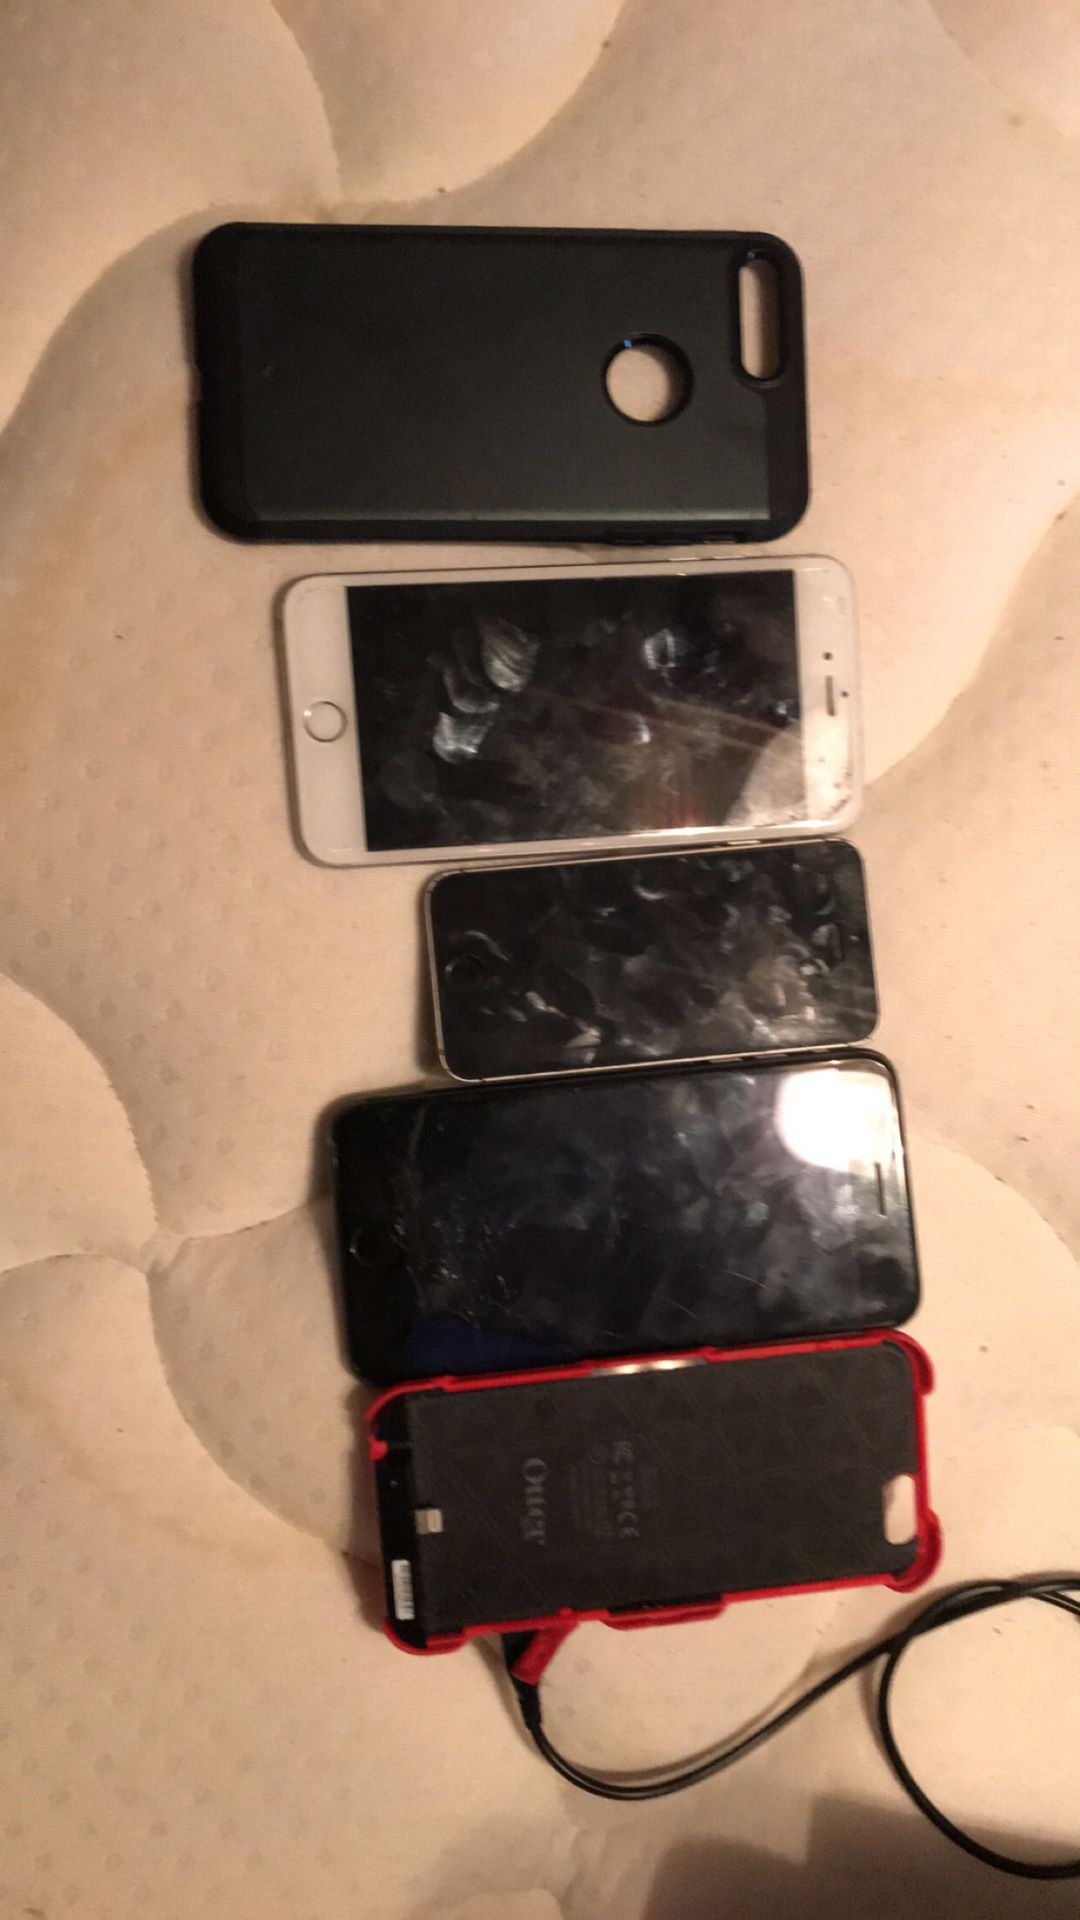 4 iPhones total. READ